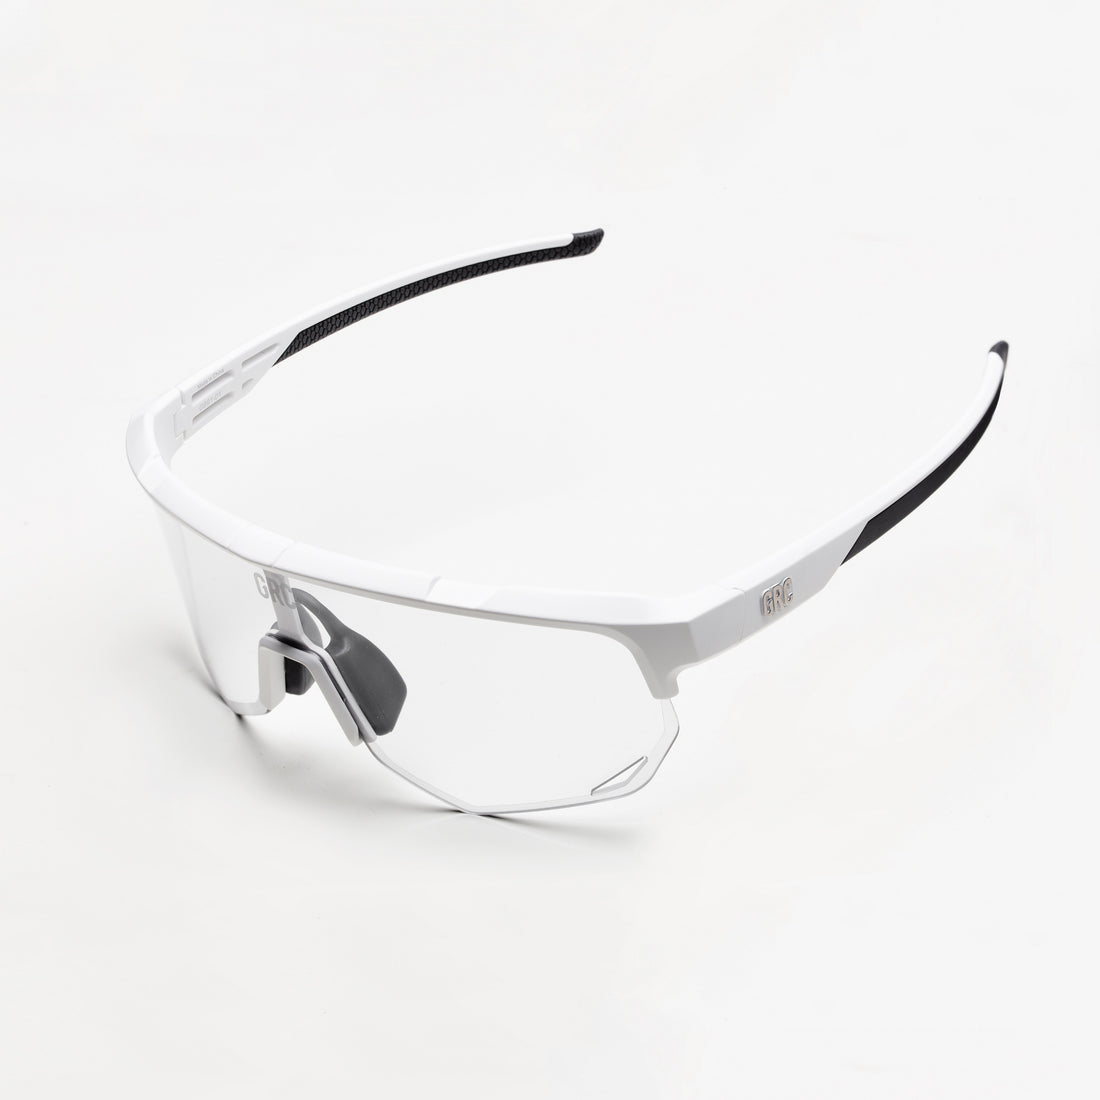 Photochrome Tech-Fahrradbrille